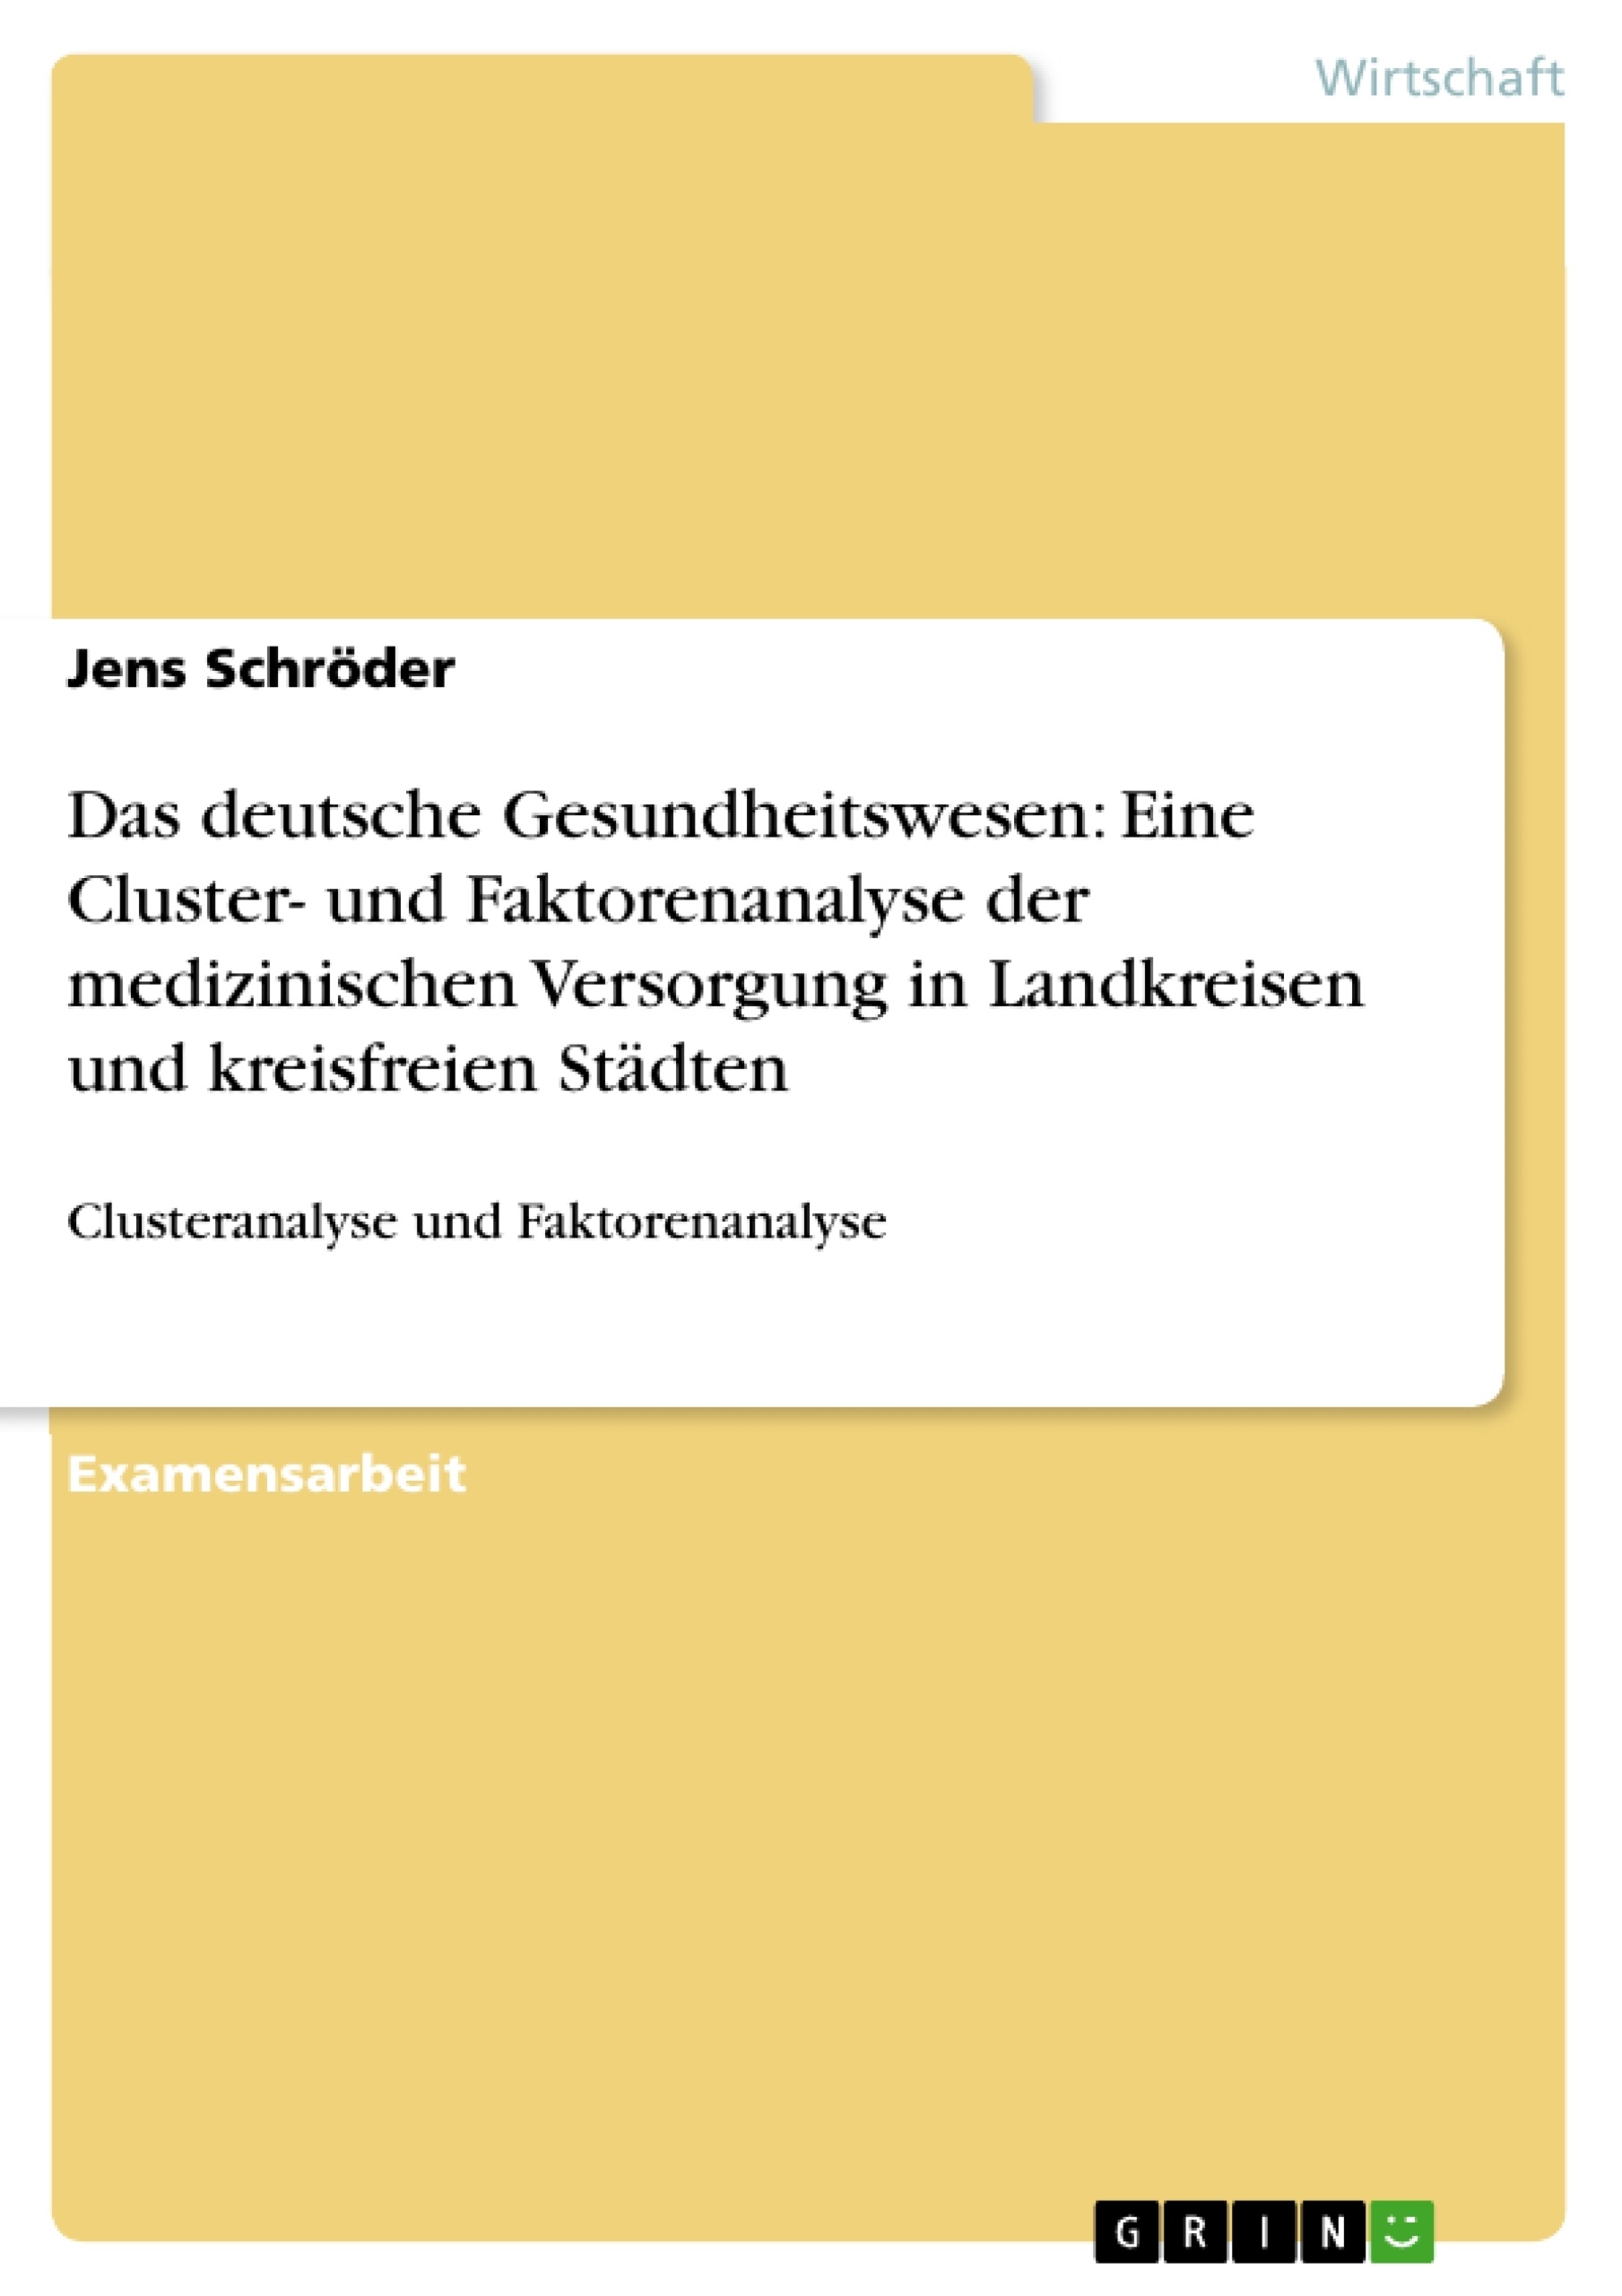 Título: Das deutsche Gesundheitswesen: Eine Cluster- und Faktorenanalyse der medizinischen Versorgung in Landkreisen und kreisfreien Städten